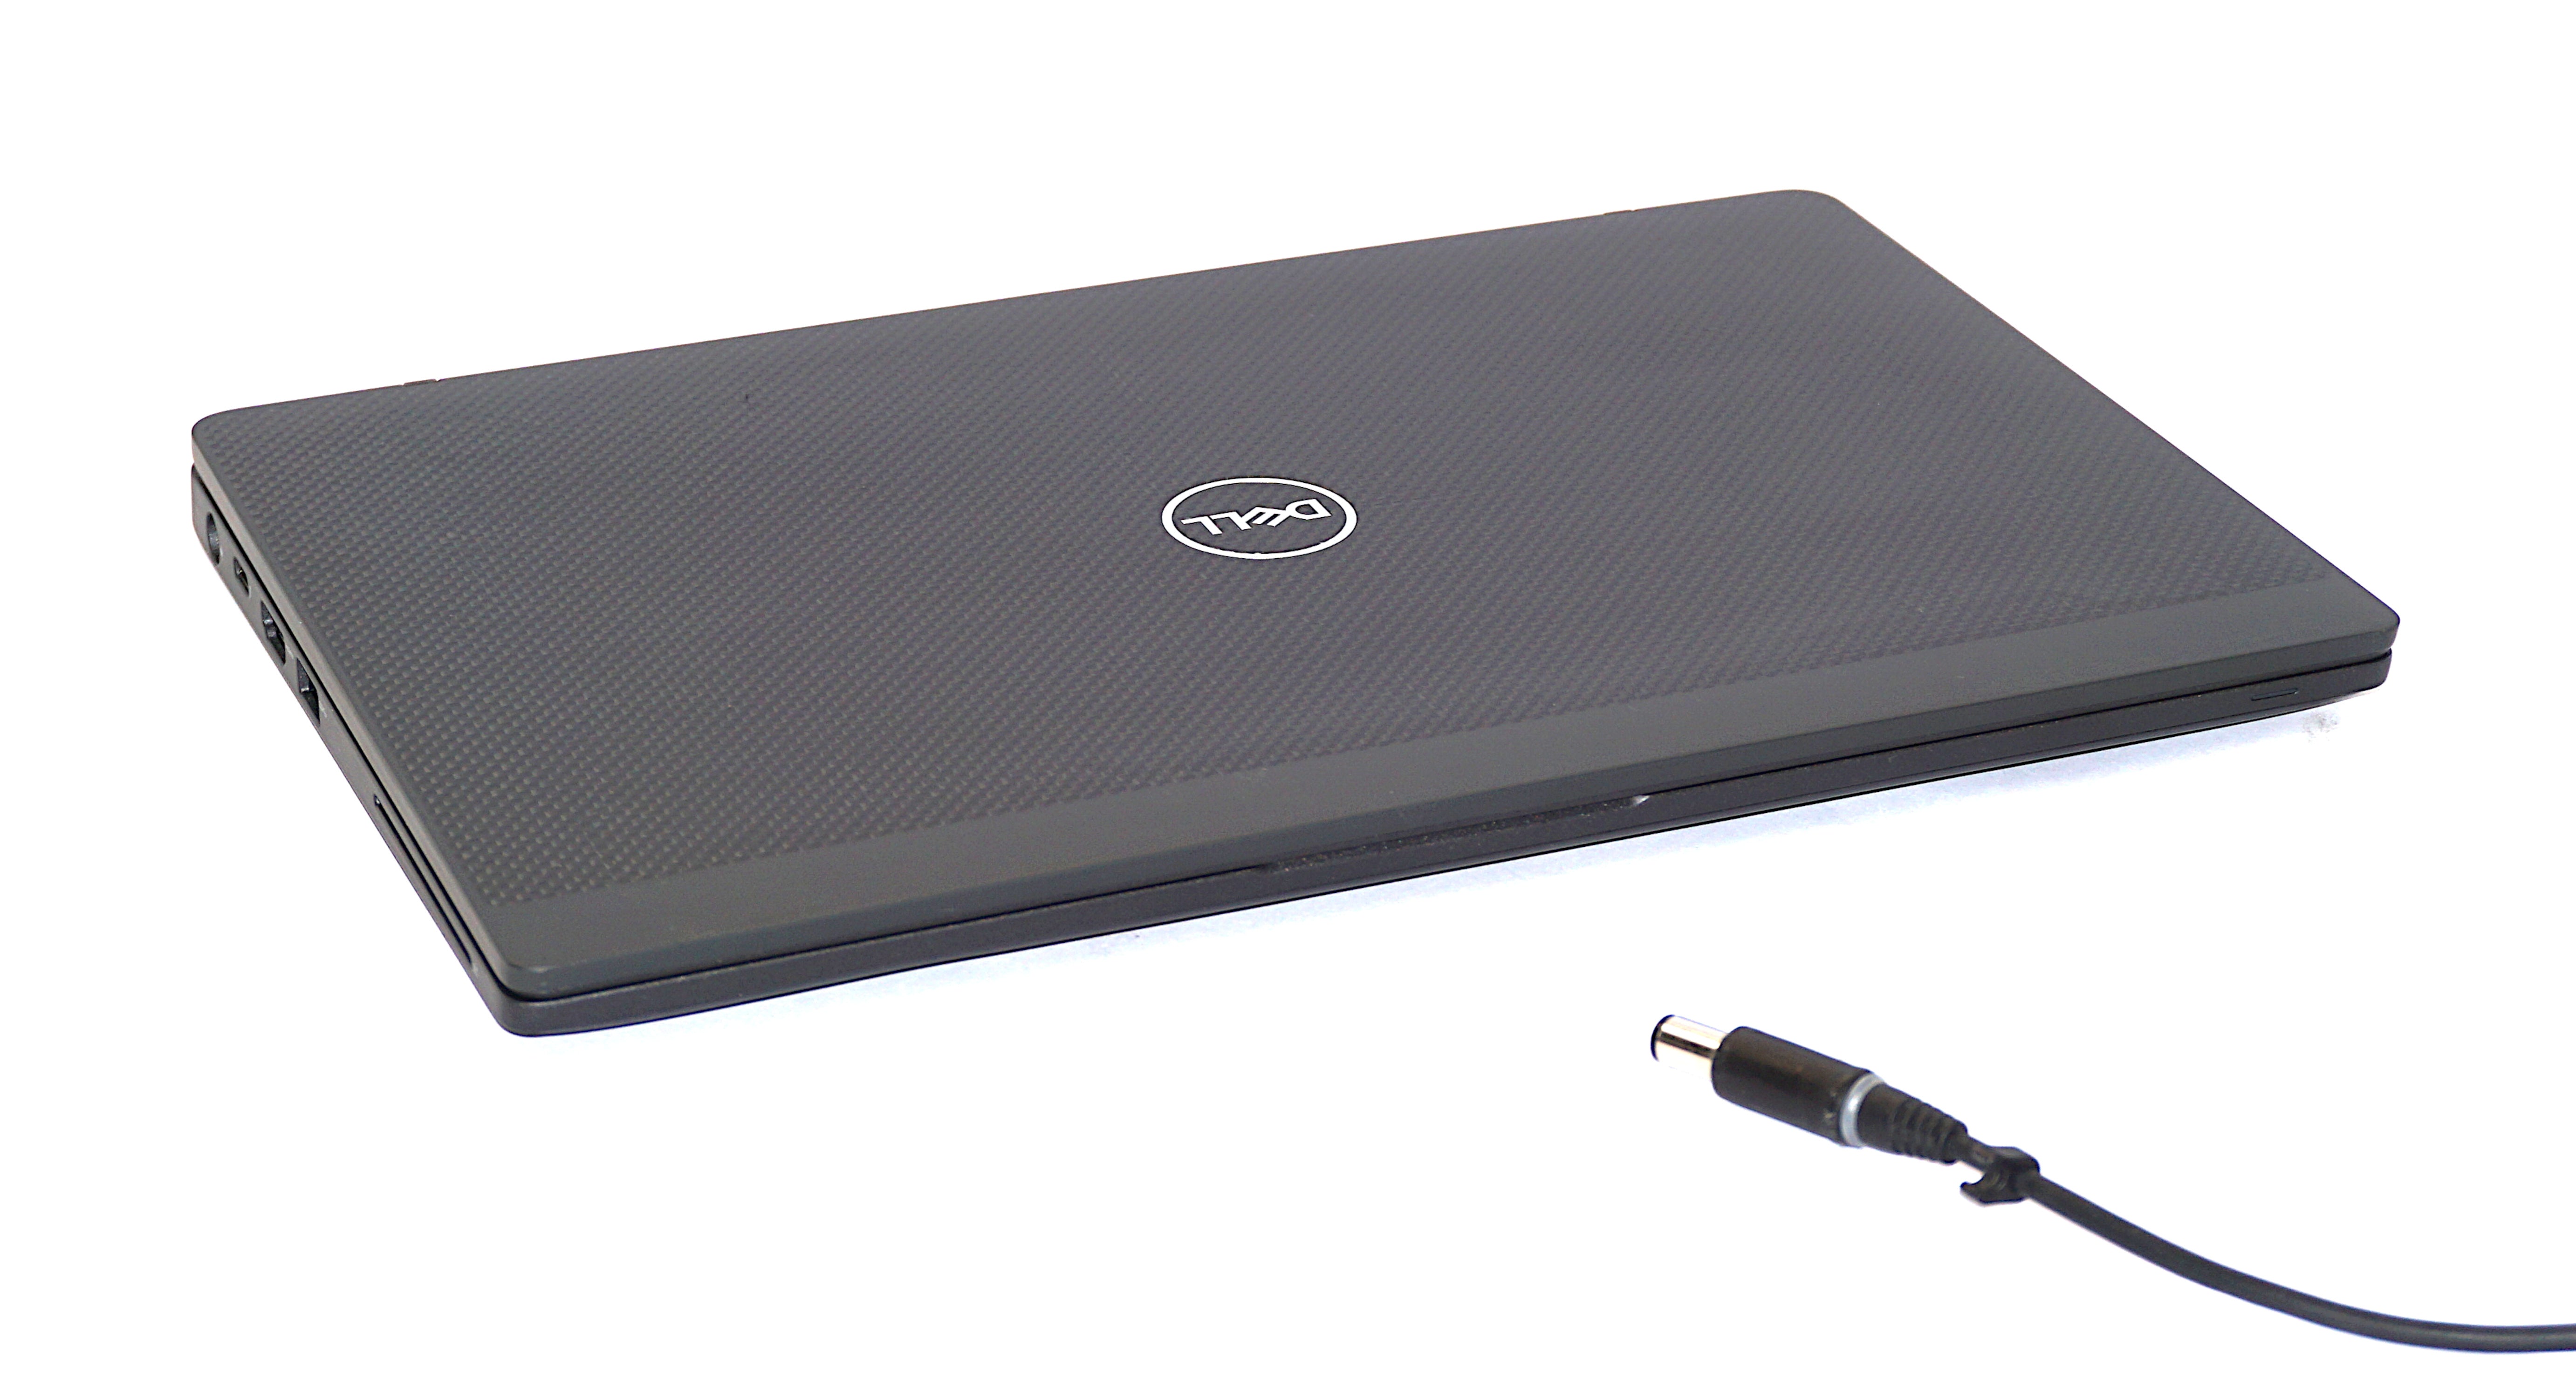 Dell Latitude 7300 Laptop, 13.3" Core i5 8th Gen, 8GB RAM, 256GB SSD